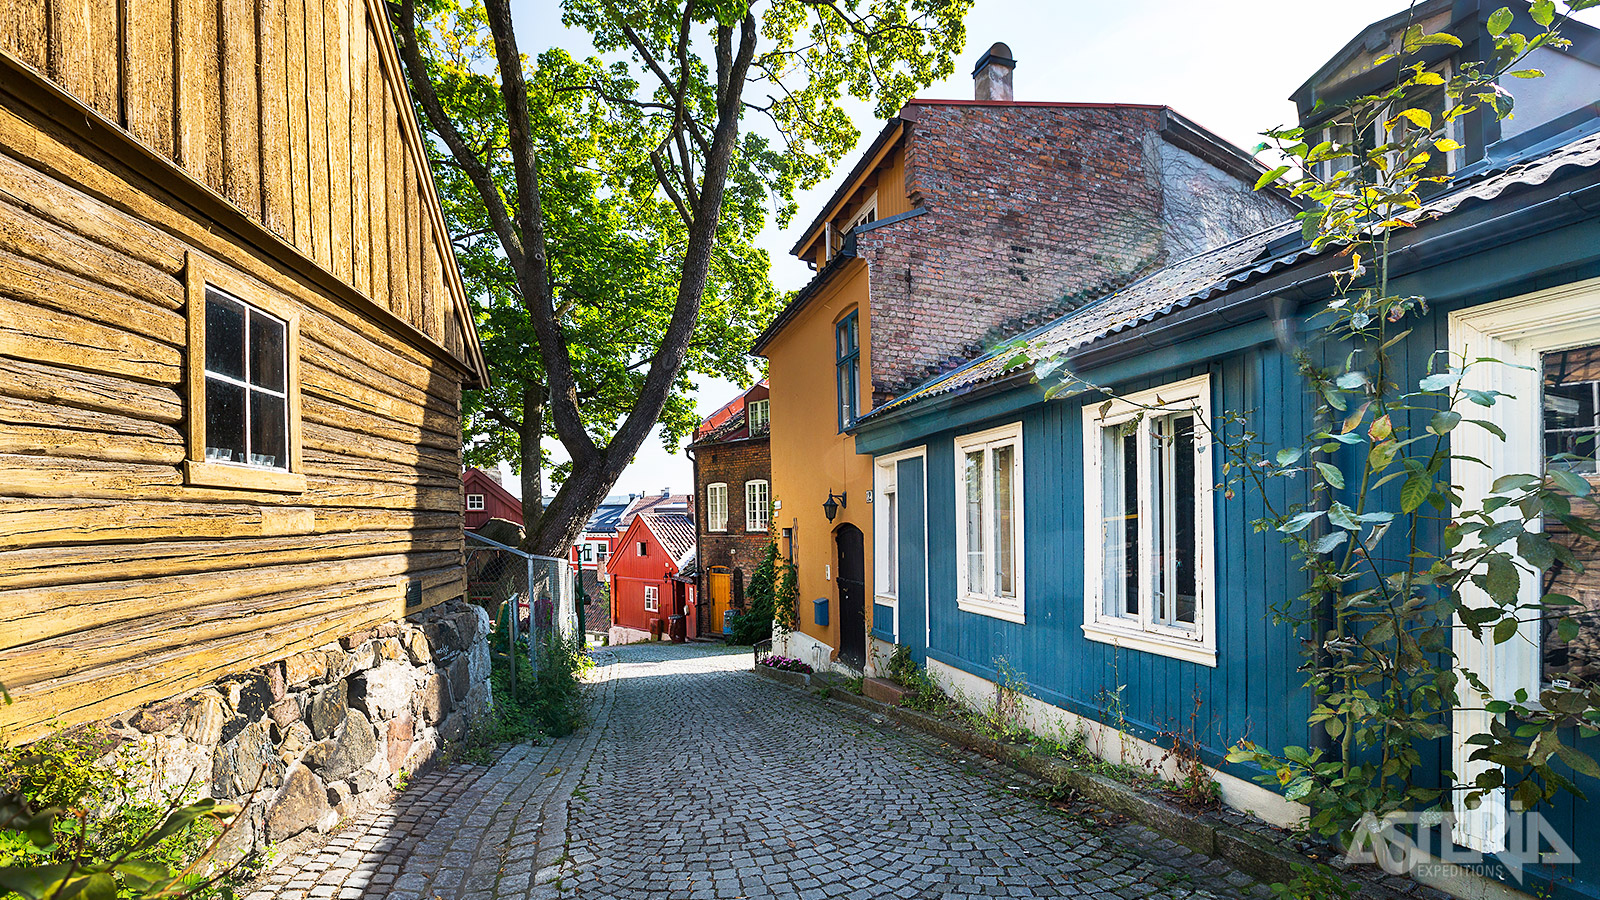 Damstredet bestaat uit twee straten met originele huizen uit het Oslo van de late jaren 1700 - 1800